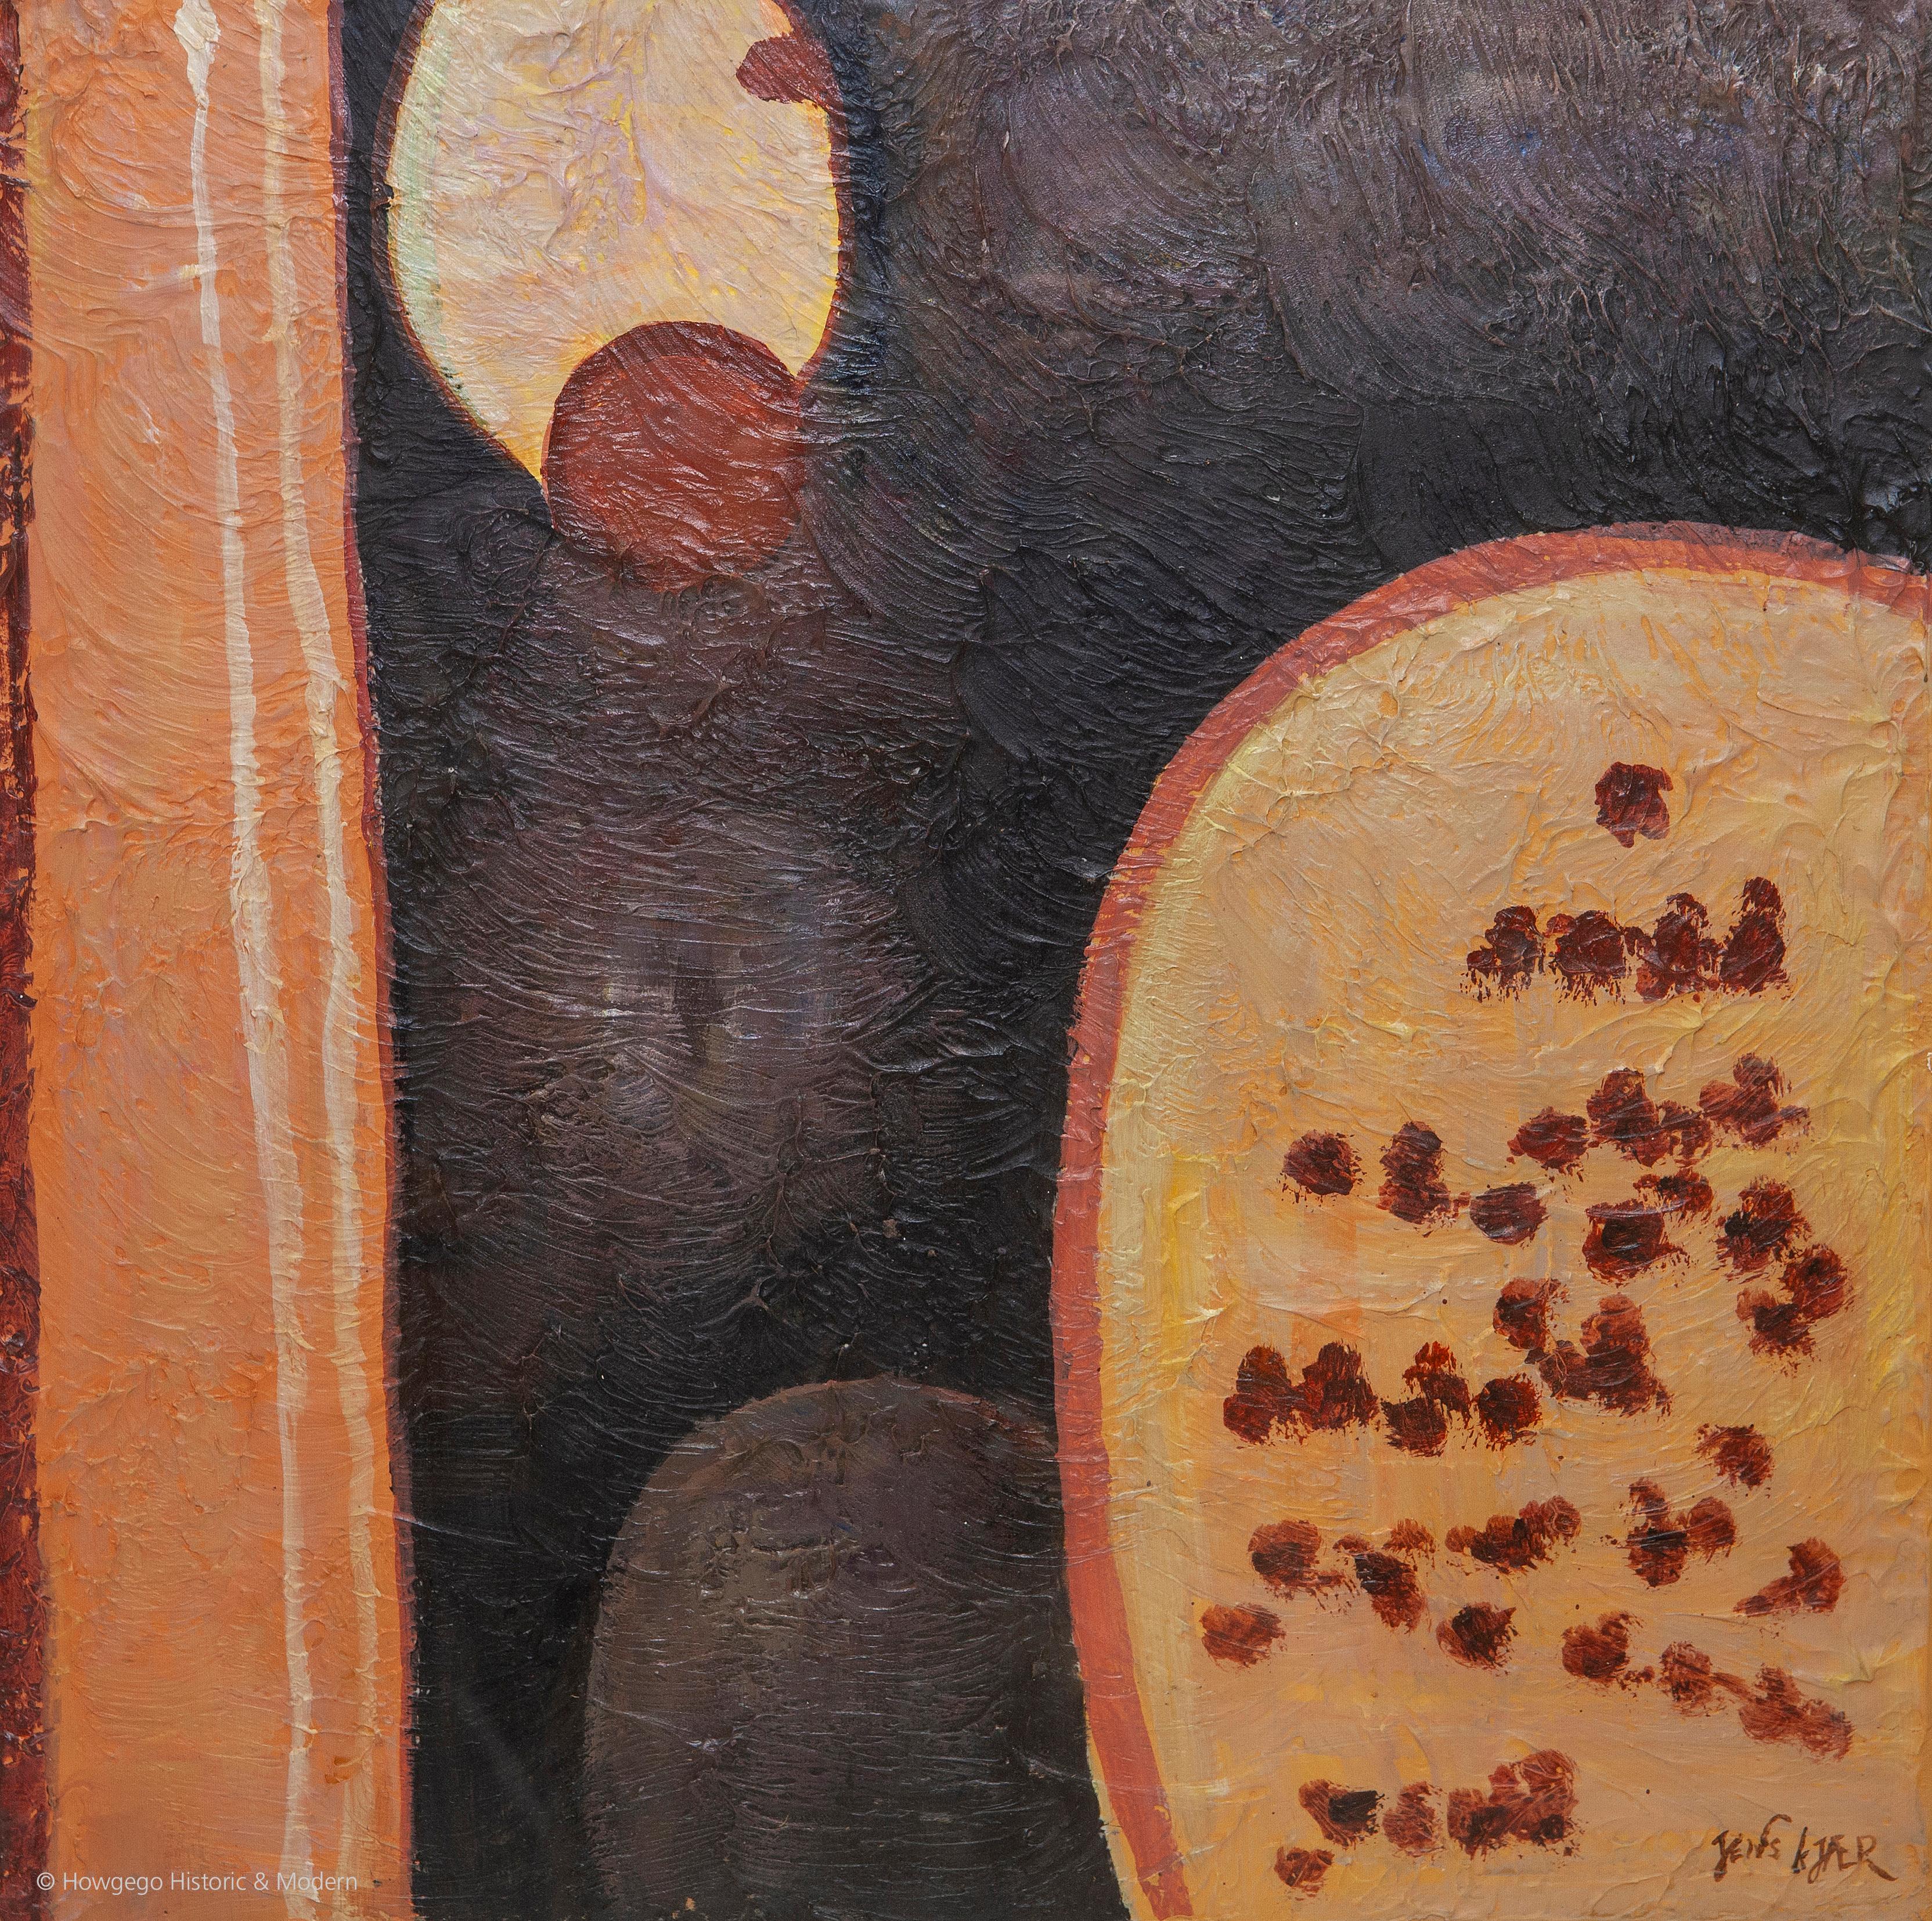 Boîtes à graines de rocaille de Jens Kjaer Planche à l'huile abstraite Pigments de terre ocre Sienne Umber 28,5